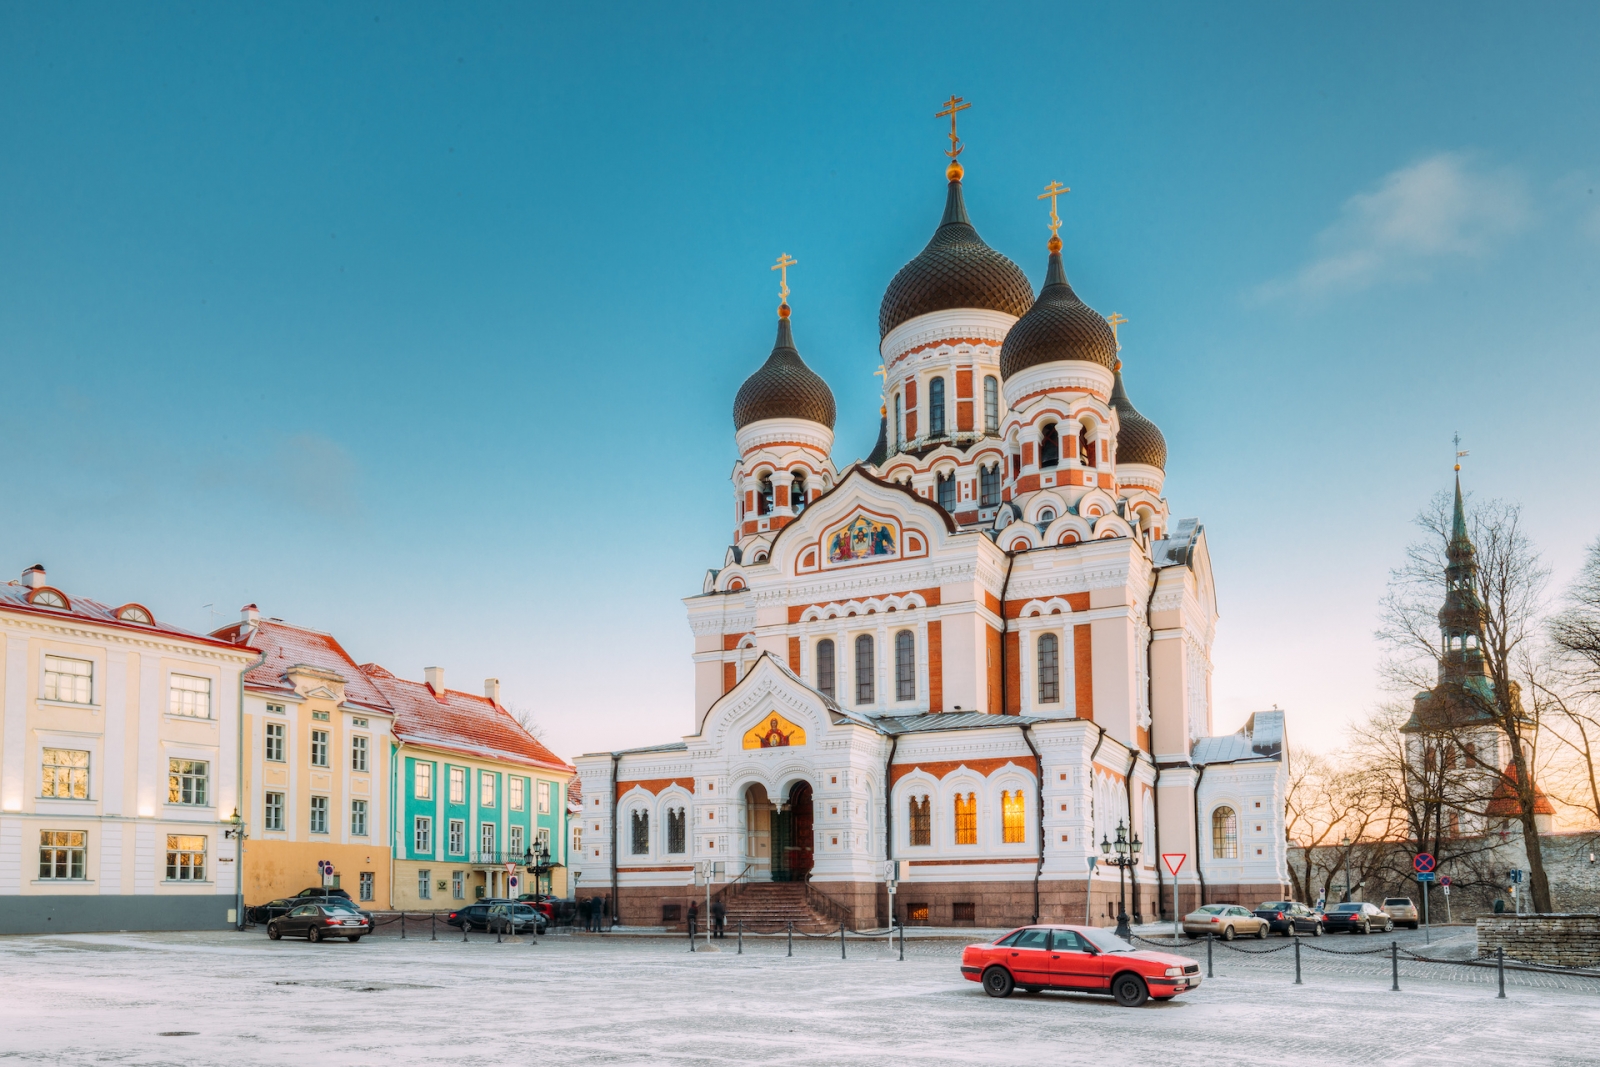 Tallinn, Estonie.  Vue Du Matin De La Cathédrale Alexandre Nevsky.  La célèbre cathédrale orthodoxe est la plus grande et la plus grande cathédrale orthodoxe à coupole de Tallinn.